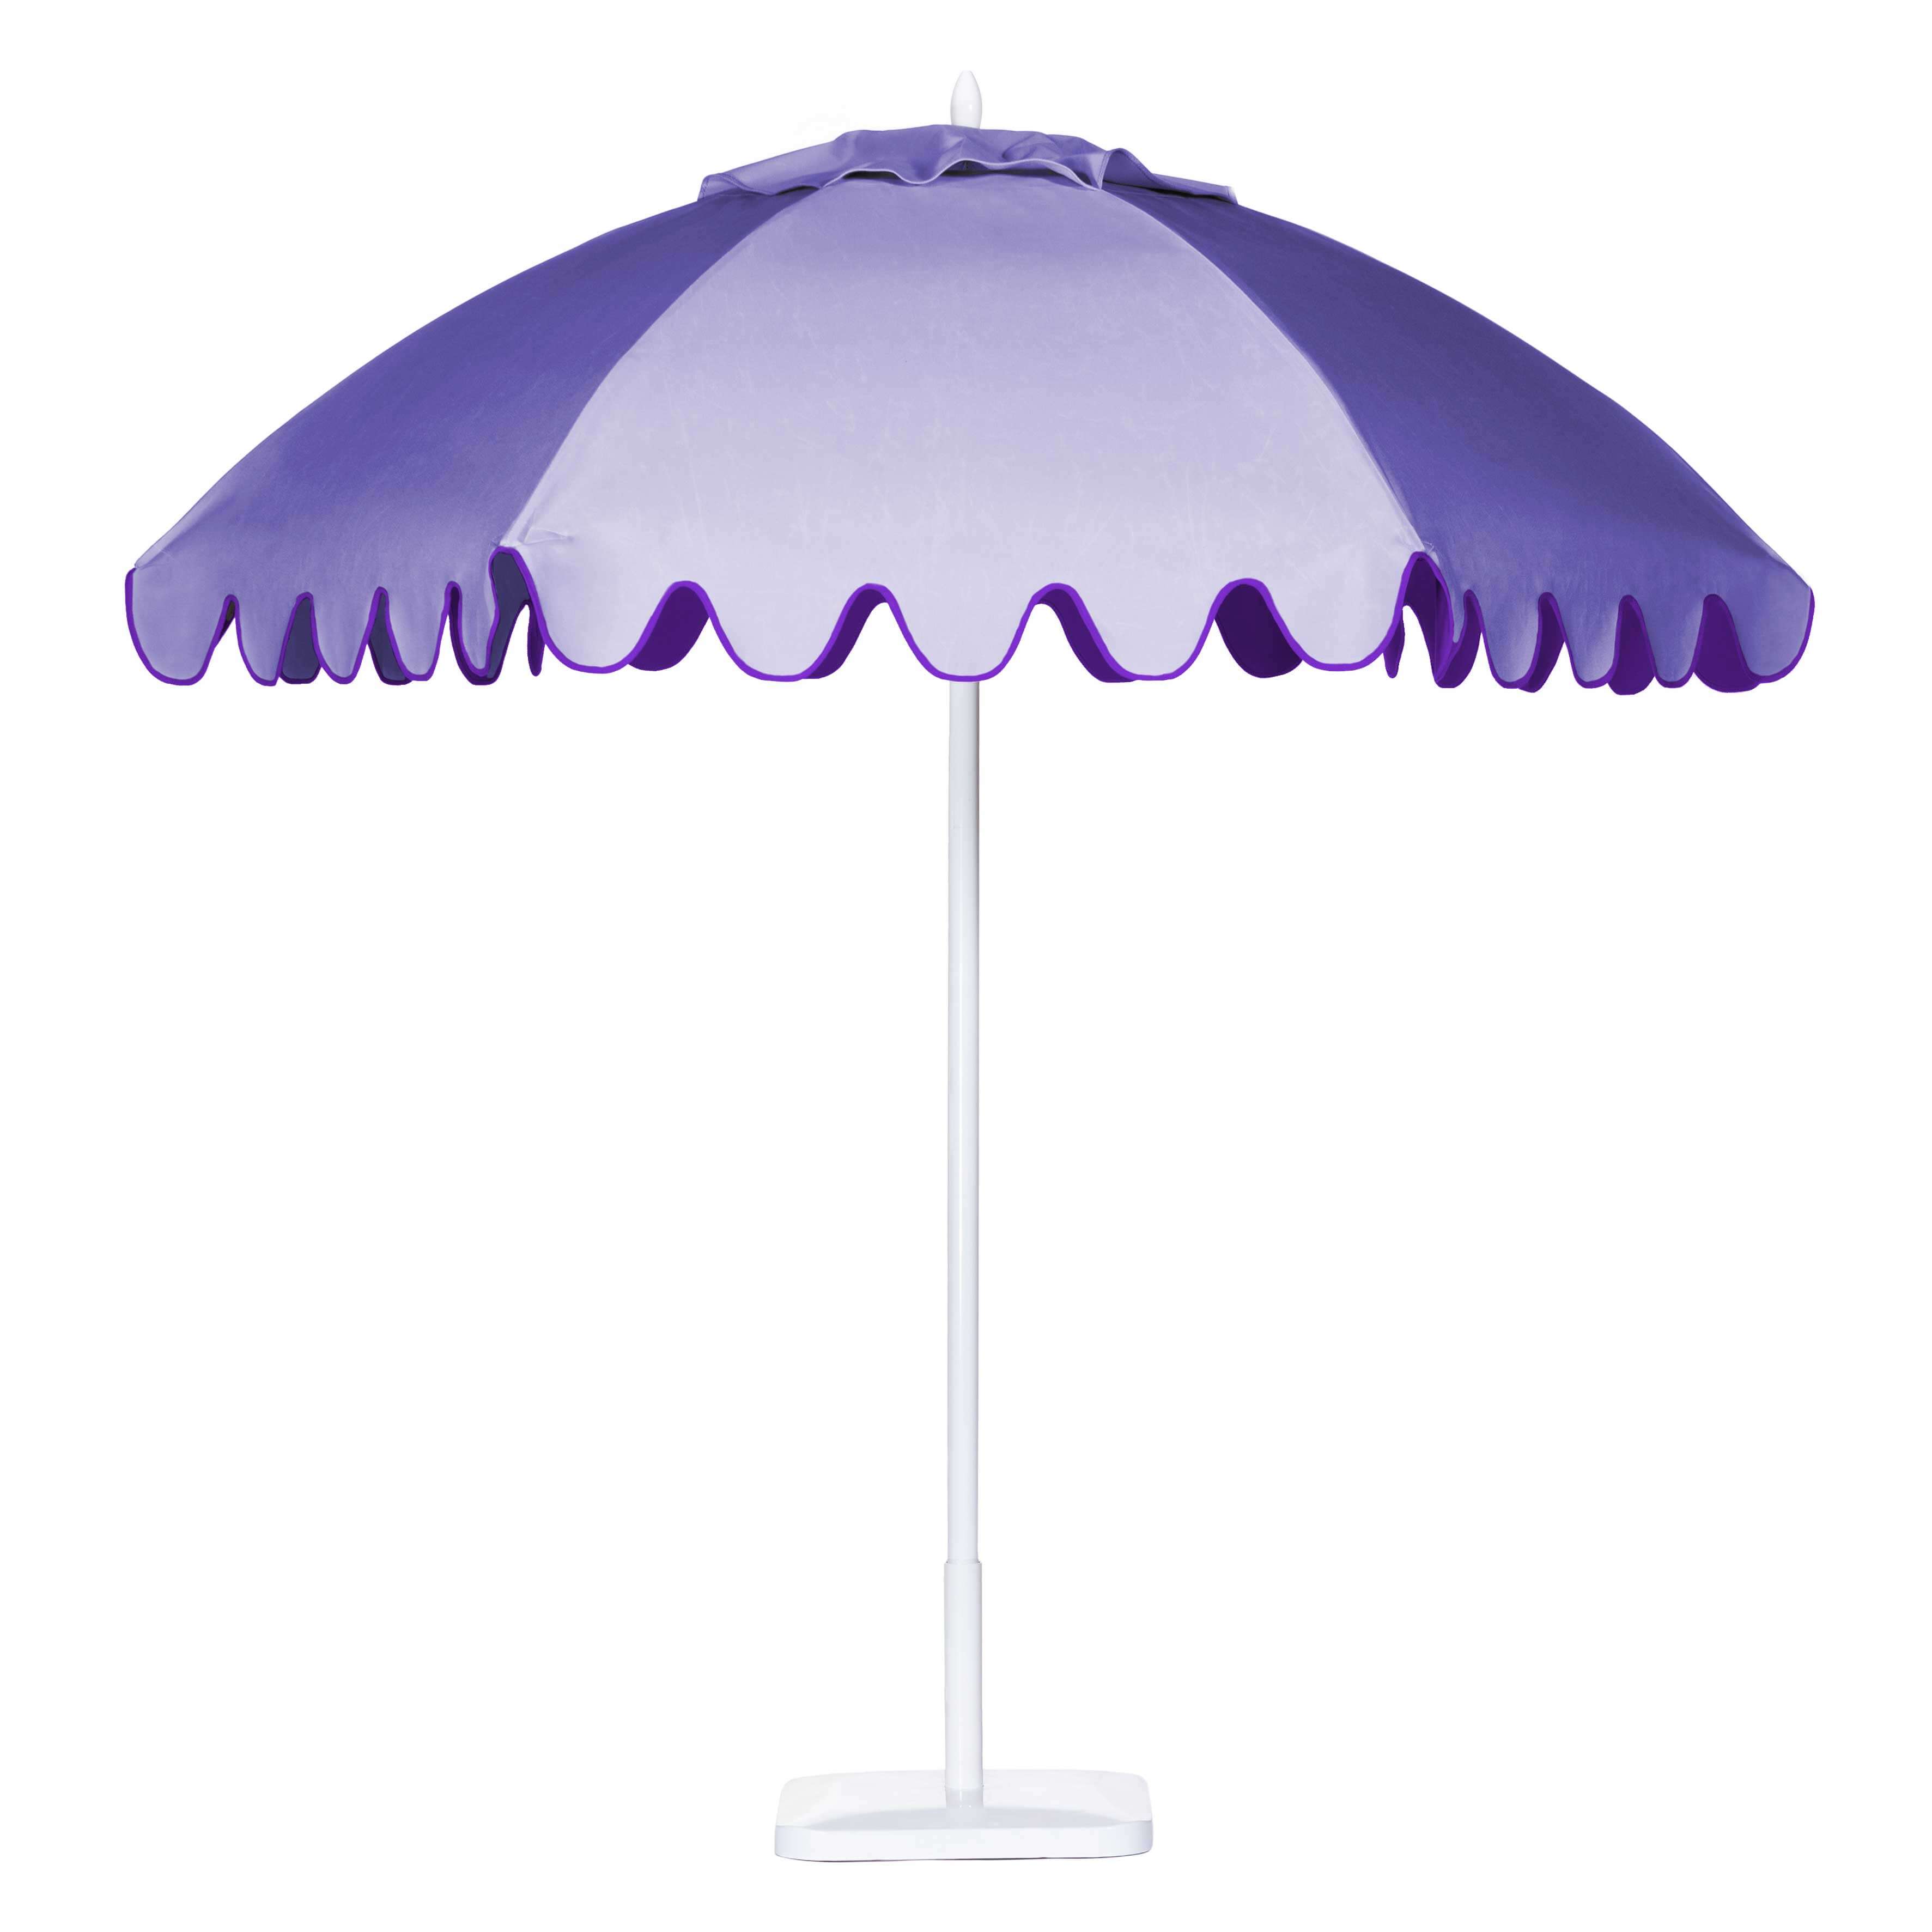 Lavender Cloud Umbrella Image